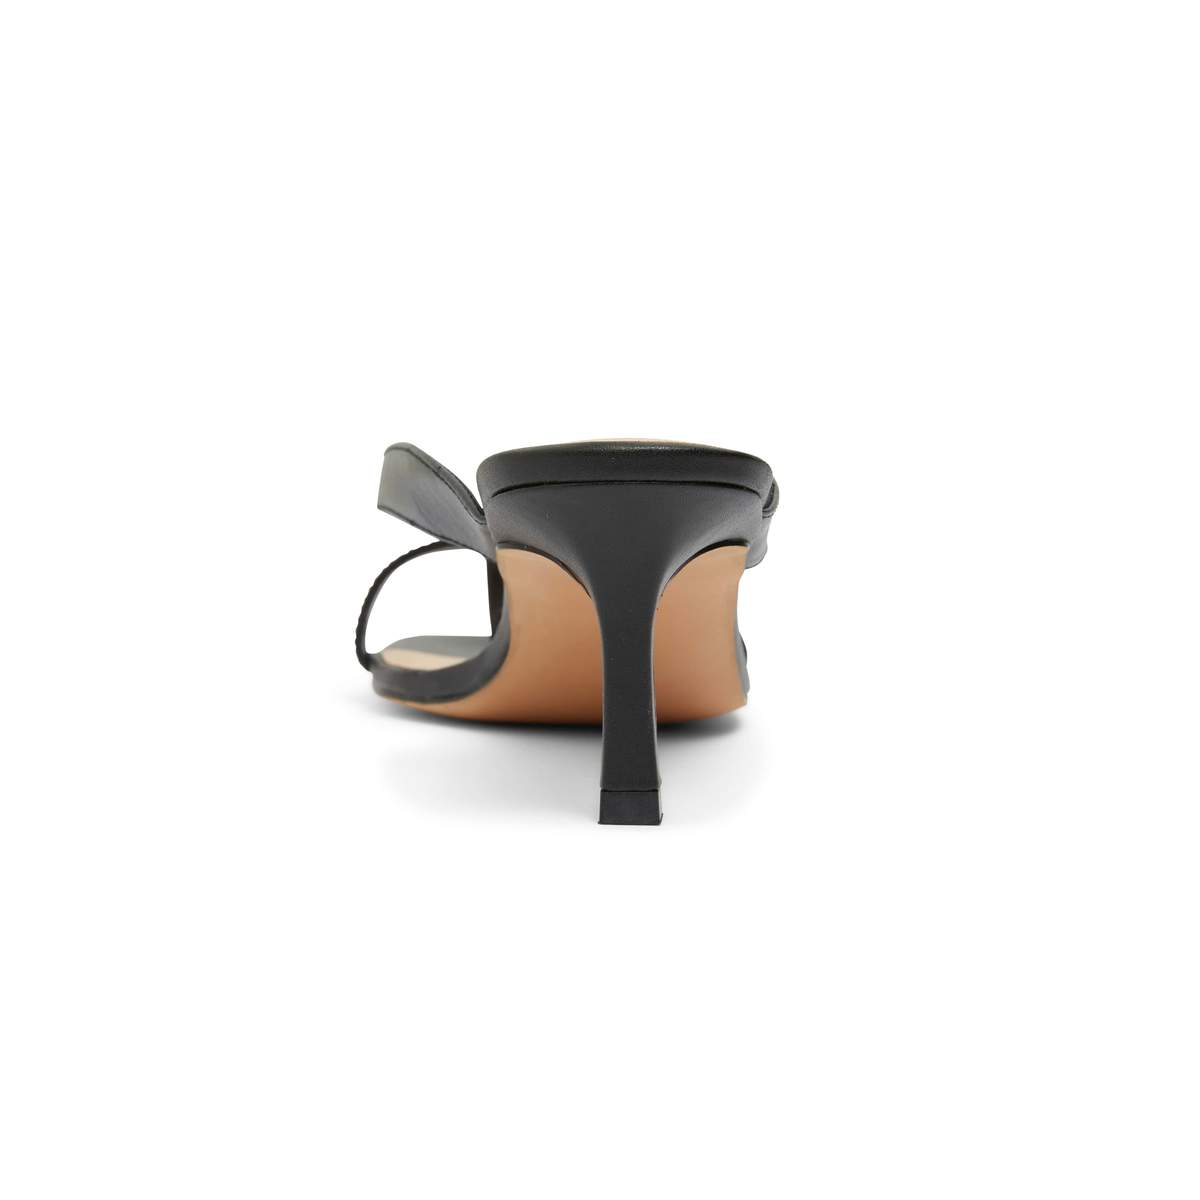 MADRID strappy mule - SANDLER - 10, 11, 5, 6, 7, 8, 9, BLACK, CAMEL, mule heel, on sale, womens footwear - Stomp Shoes Darwin